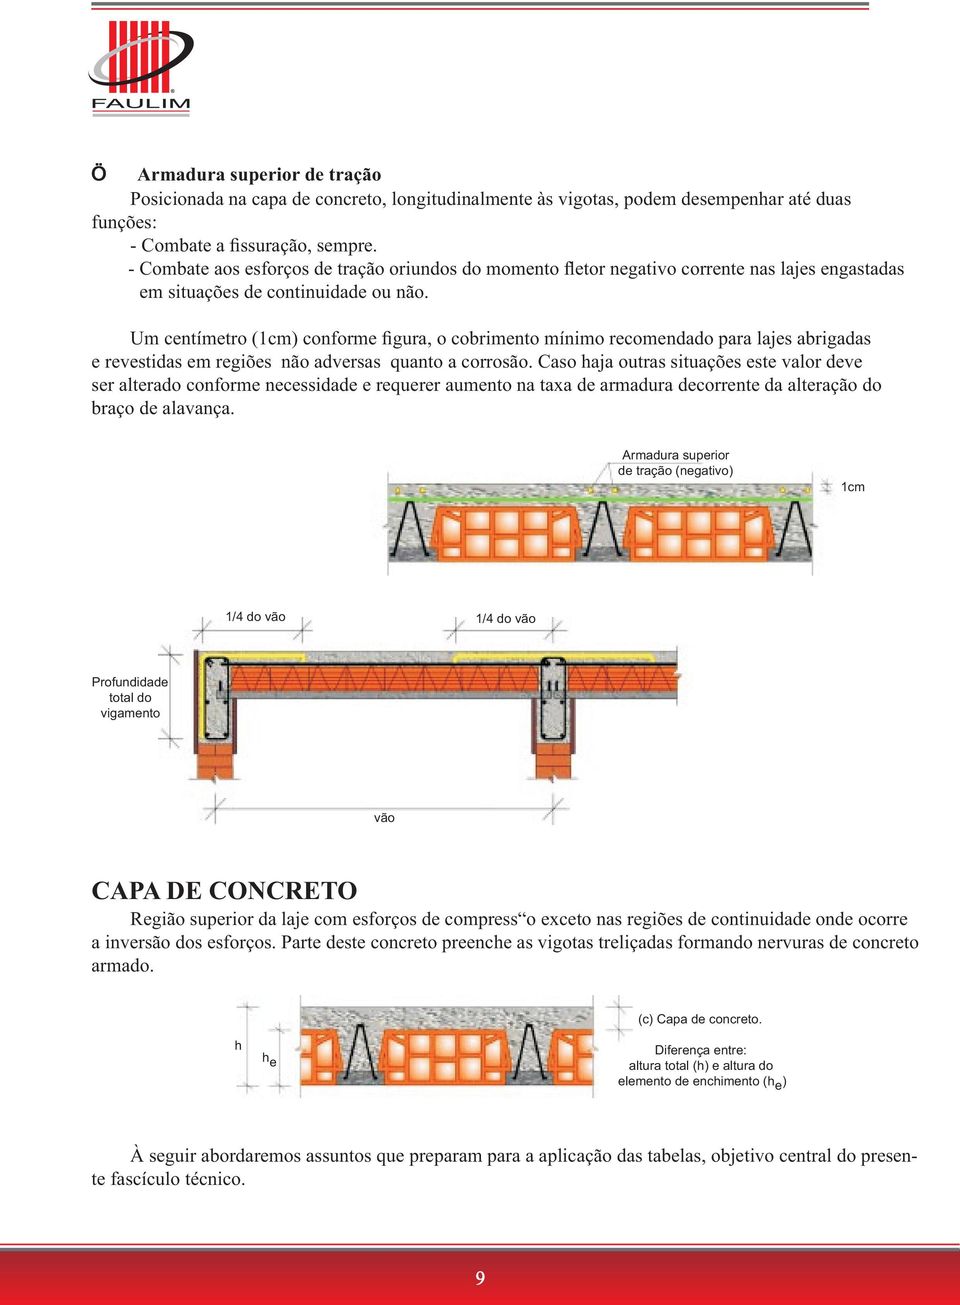 Um centímetro (1cm) conforme figura, o cobrimento mínimo recomendado para lajes abrigadas e revestidas em regiões não adversas quanto a corrosão.